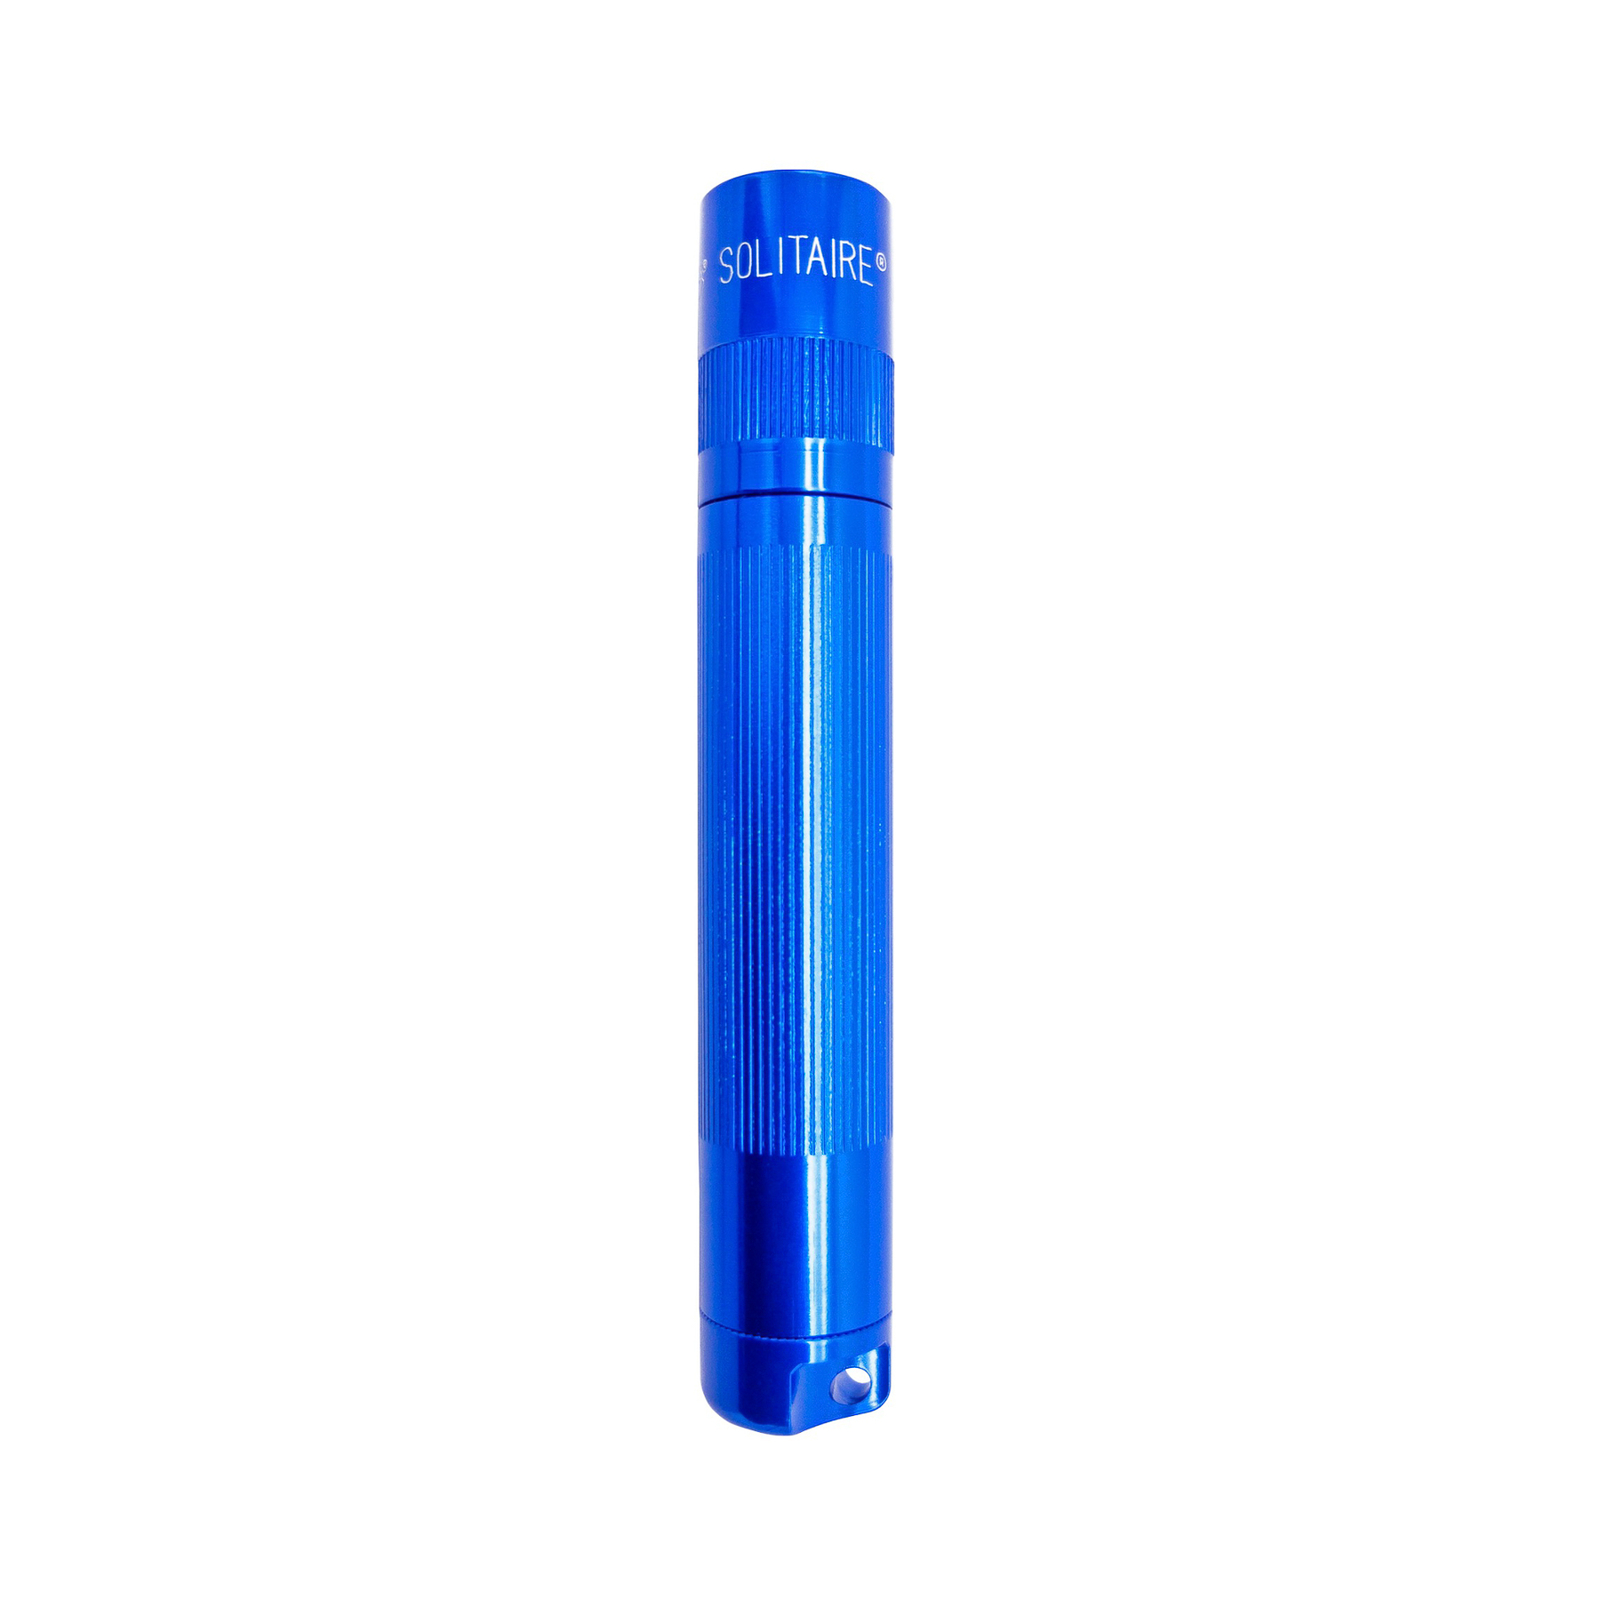 Svítilna Maglite LED Solitaire, 1 článek AAA, modrá